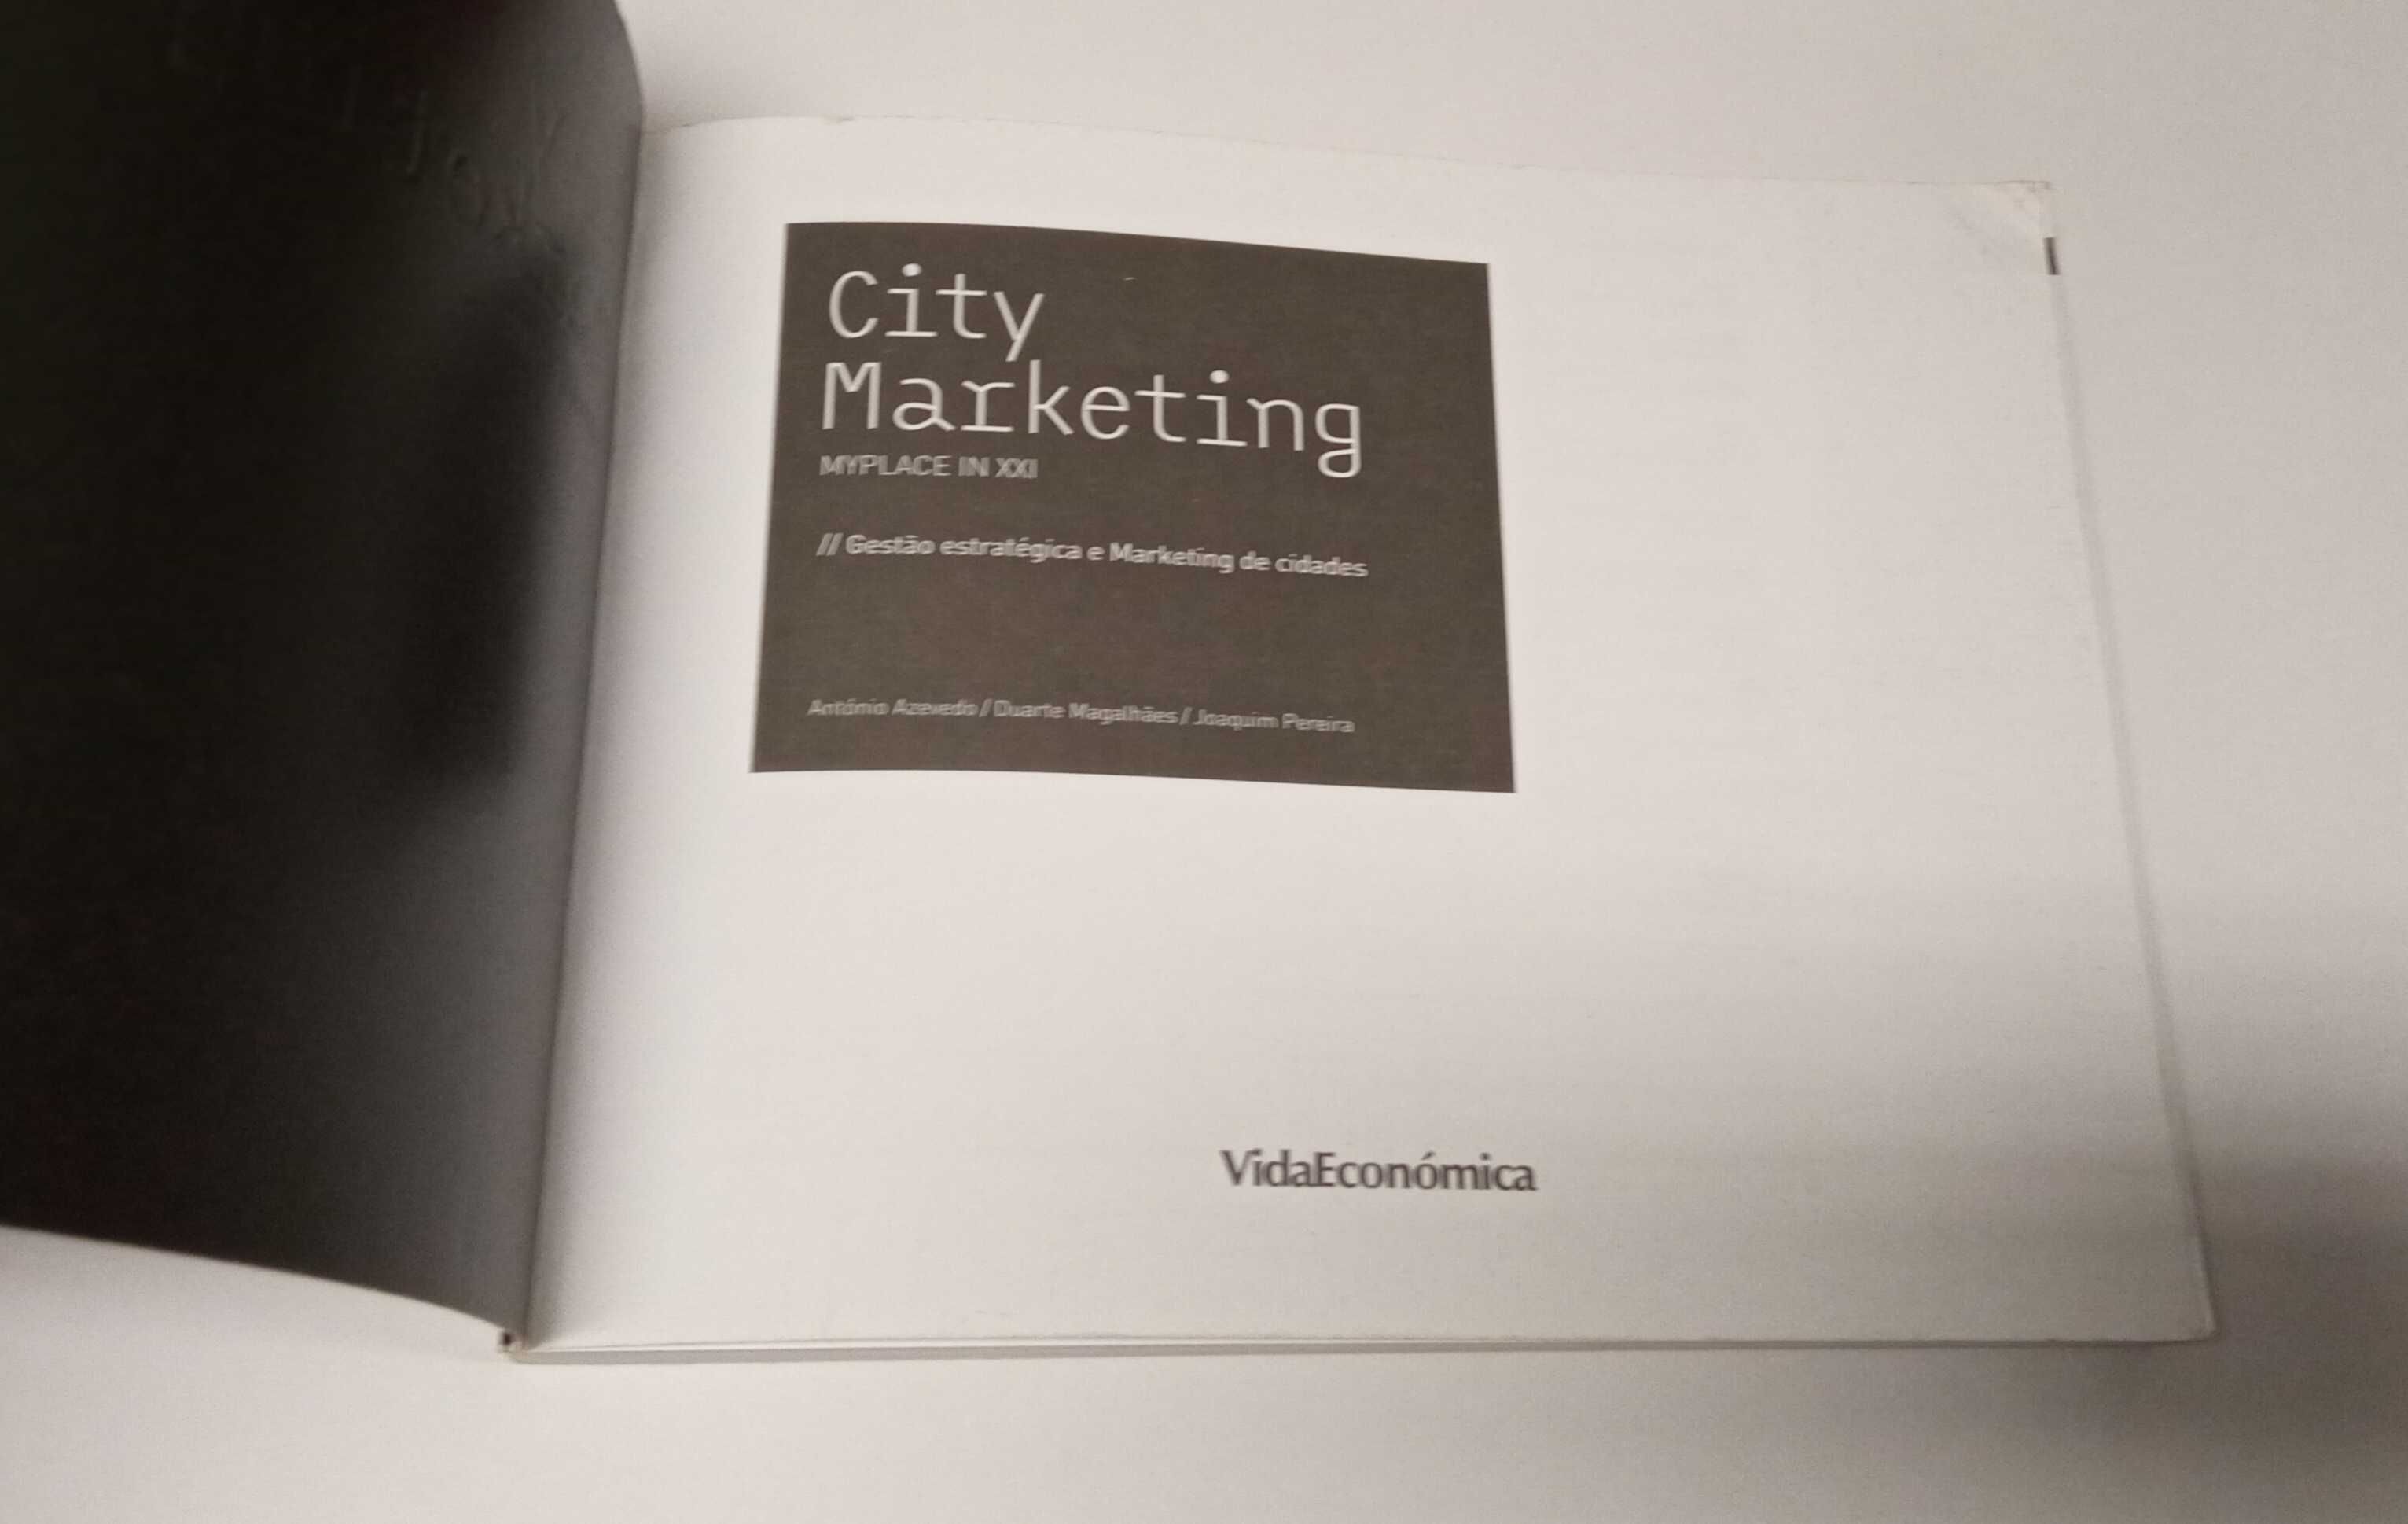 City Marketing, de António Azevedo